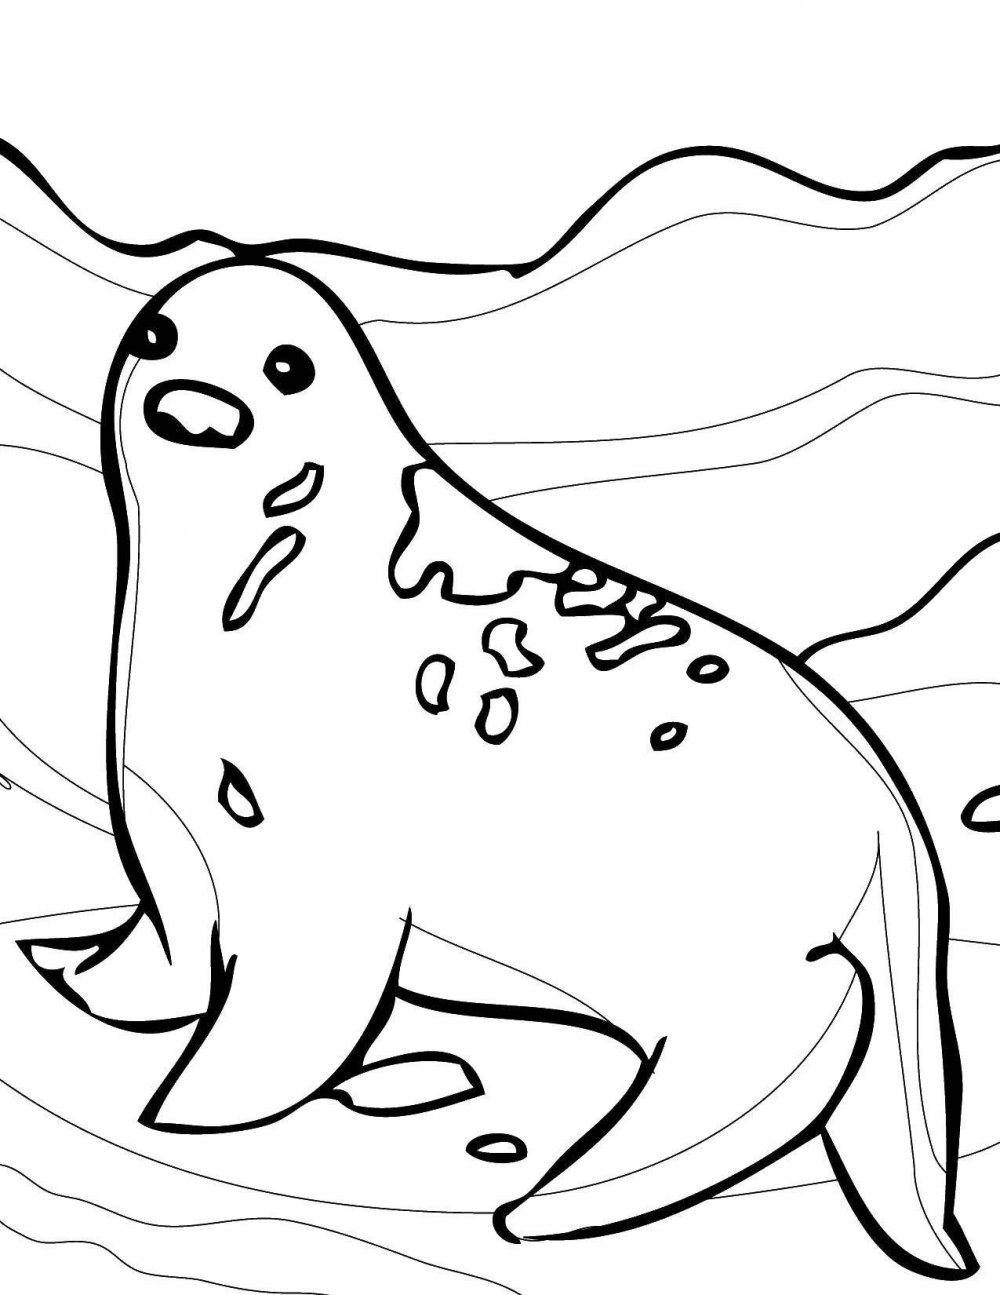 Тюлень морской котик морской Лев морской леопард